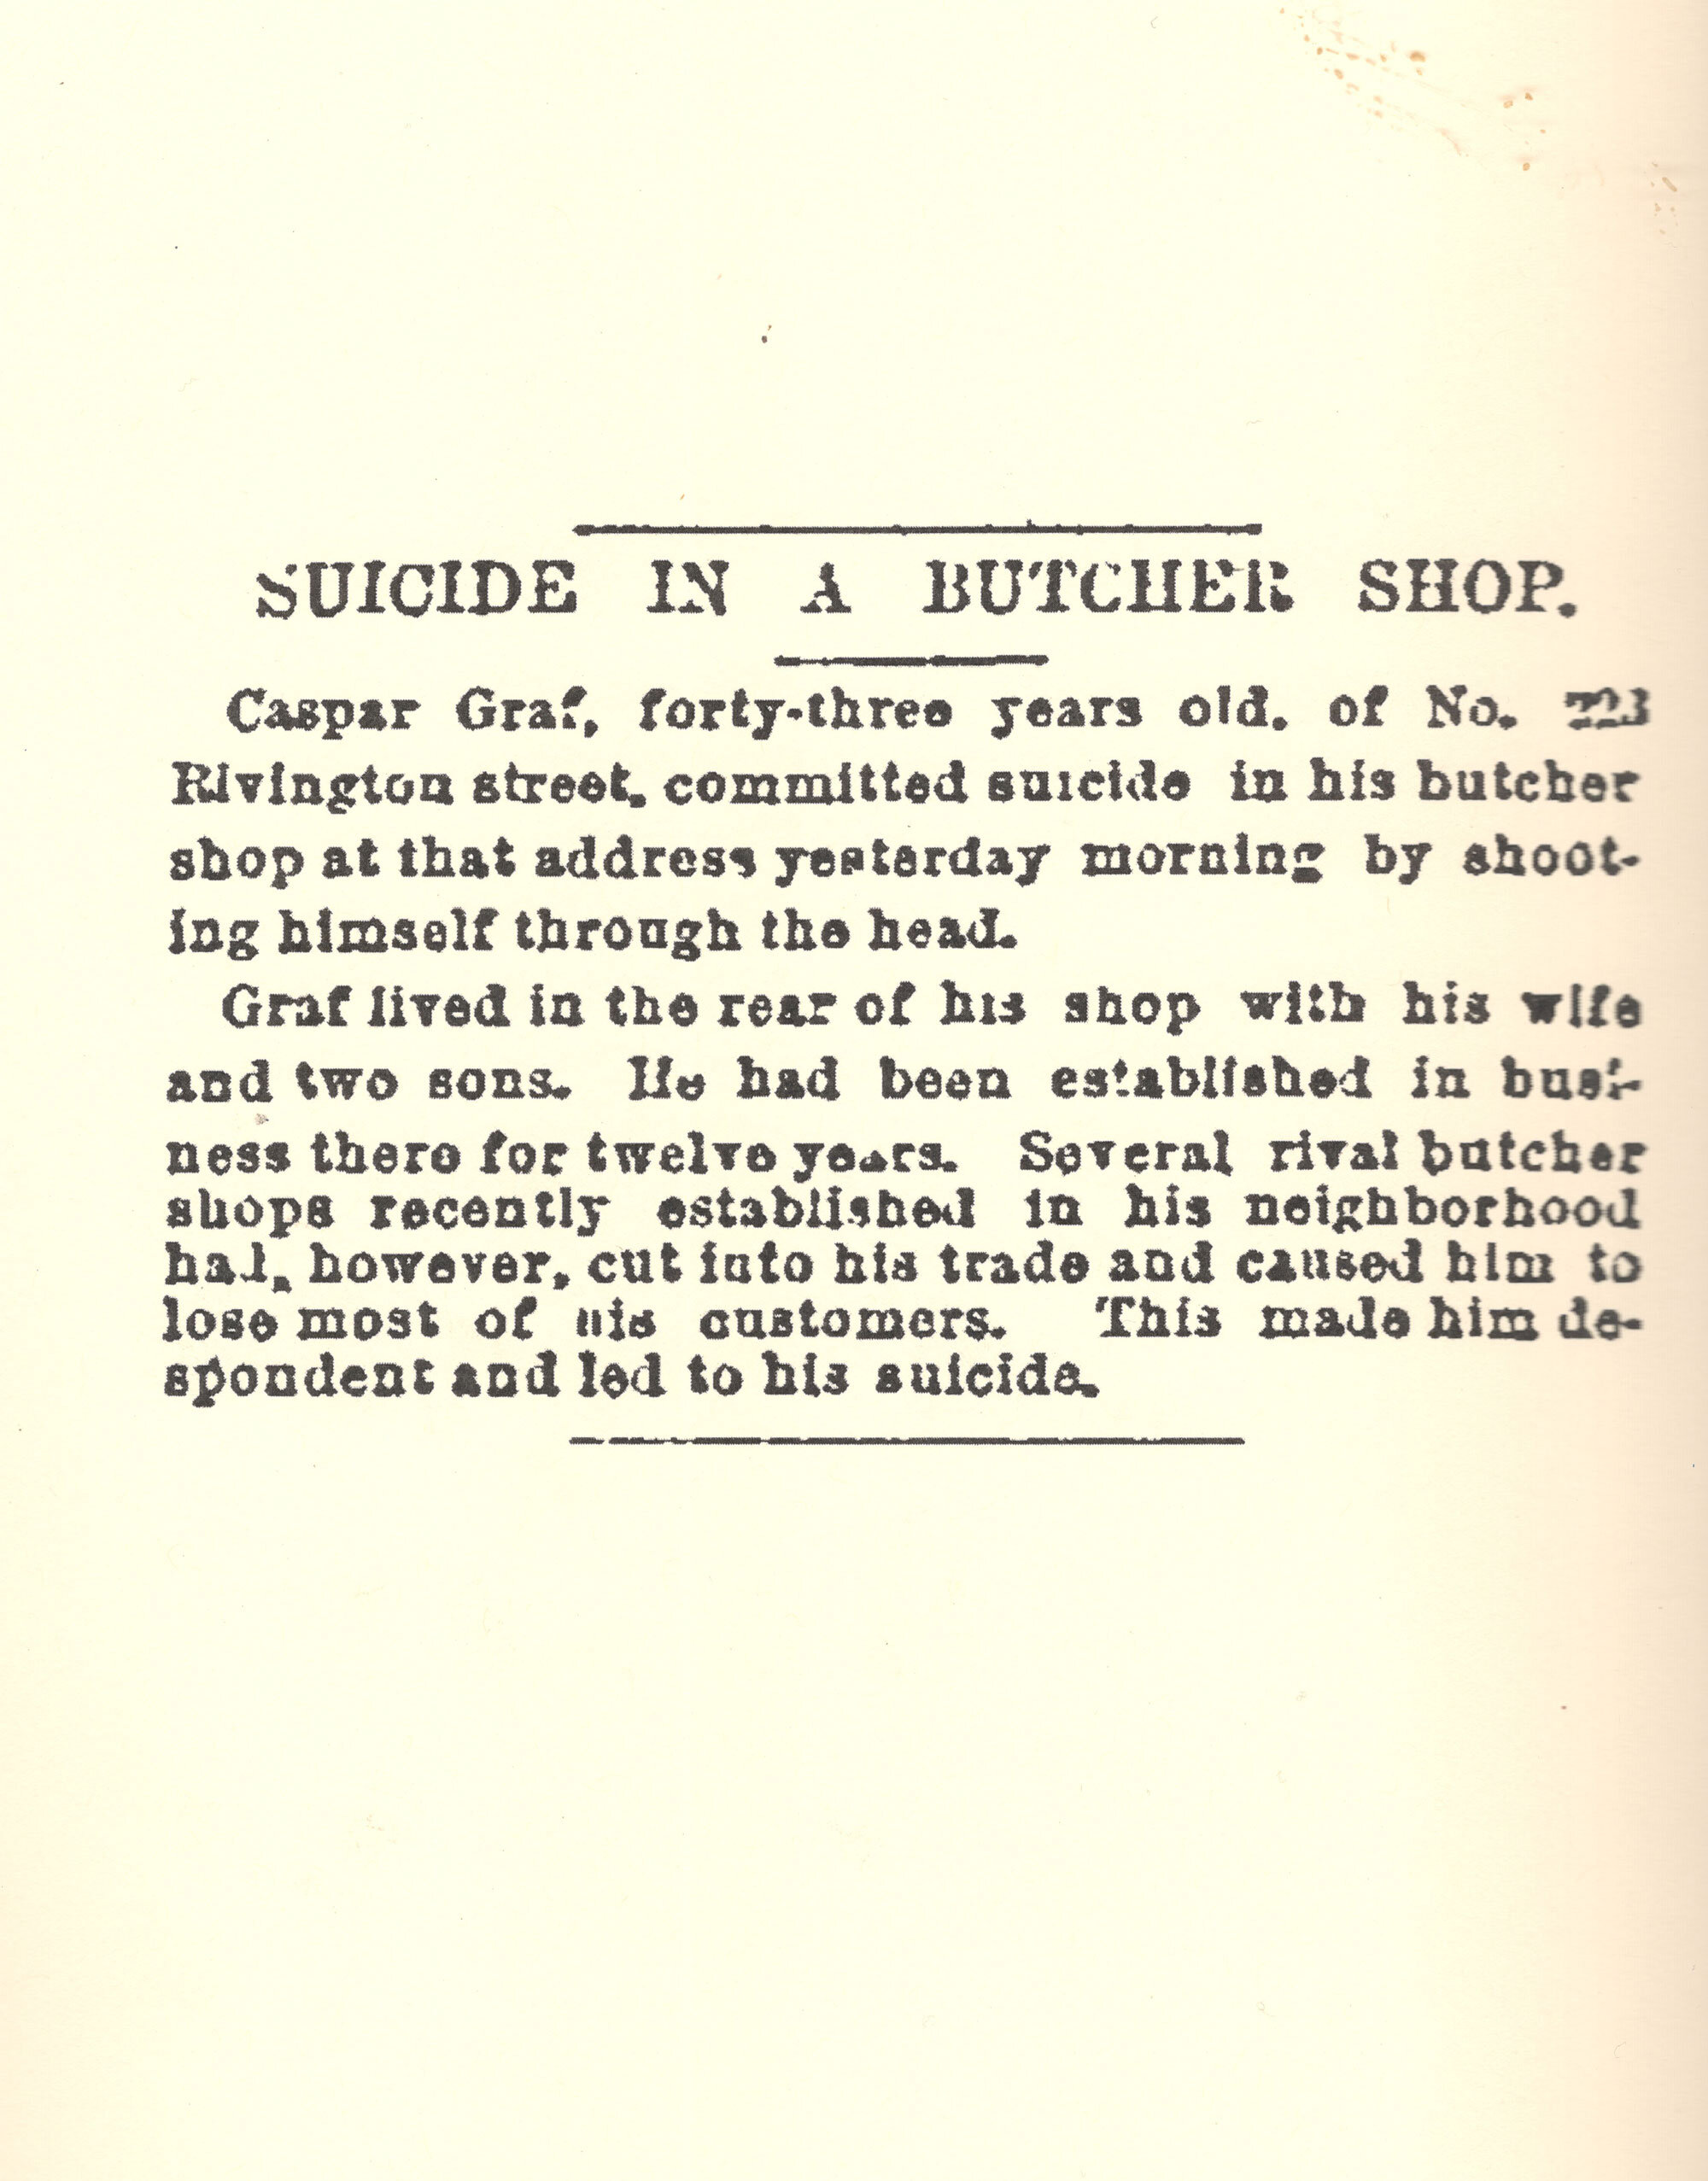 Suicide#8_Butcher-Shop_Unearthed_BG.jpg